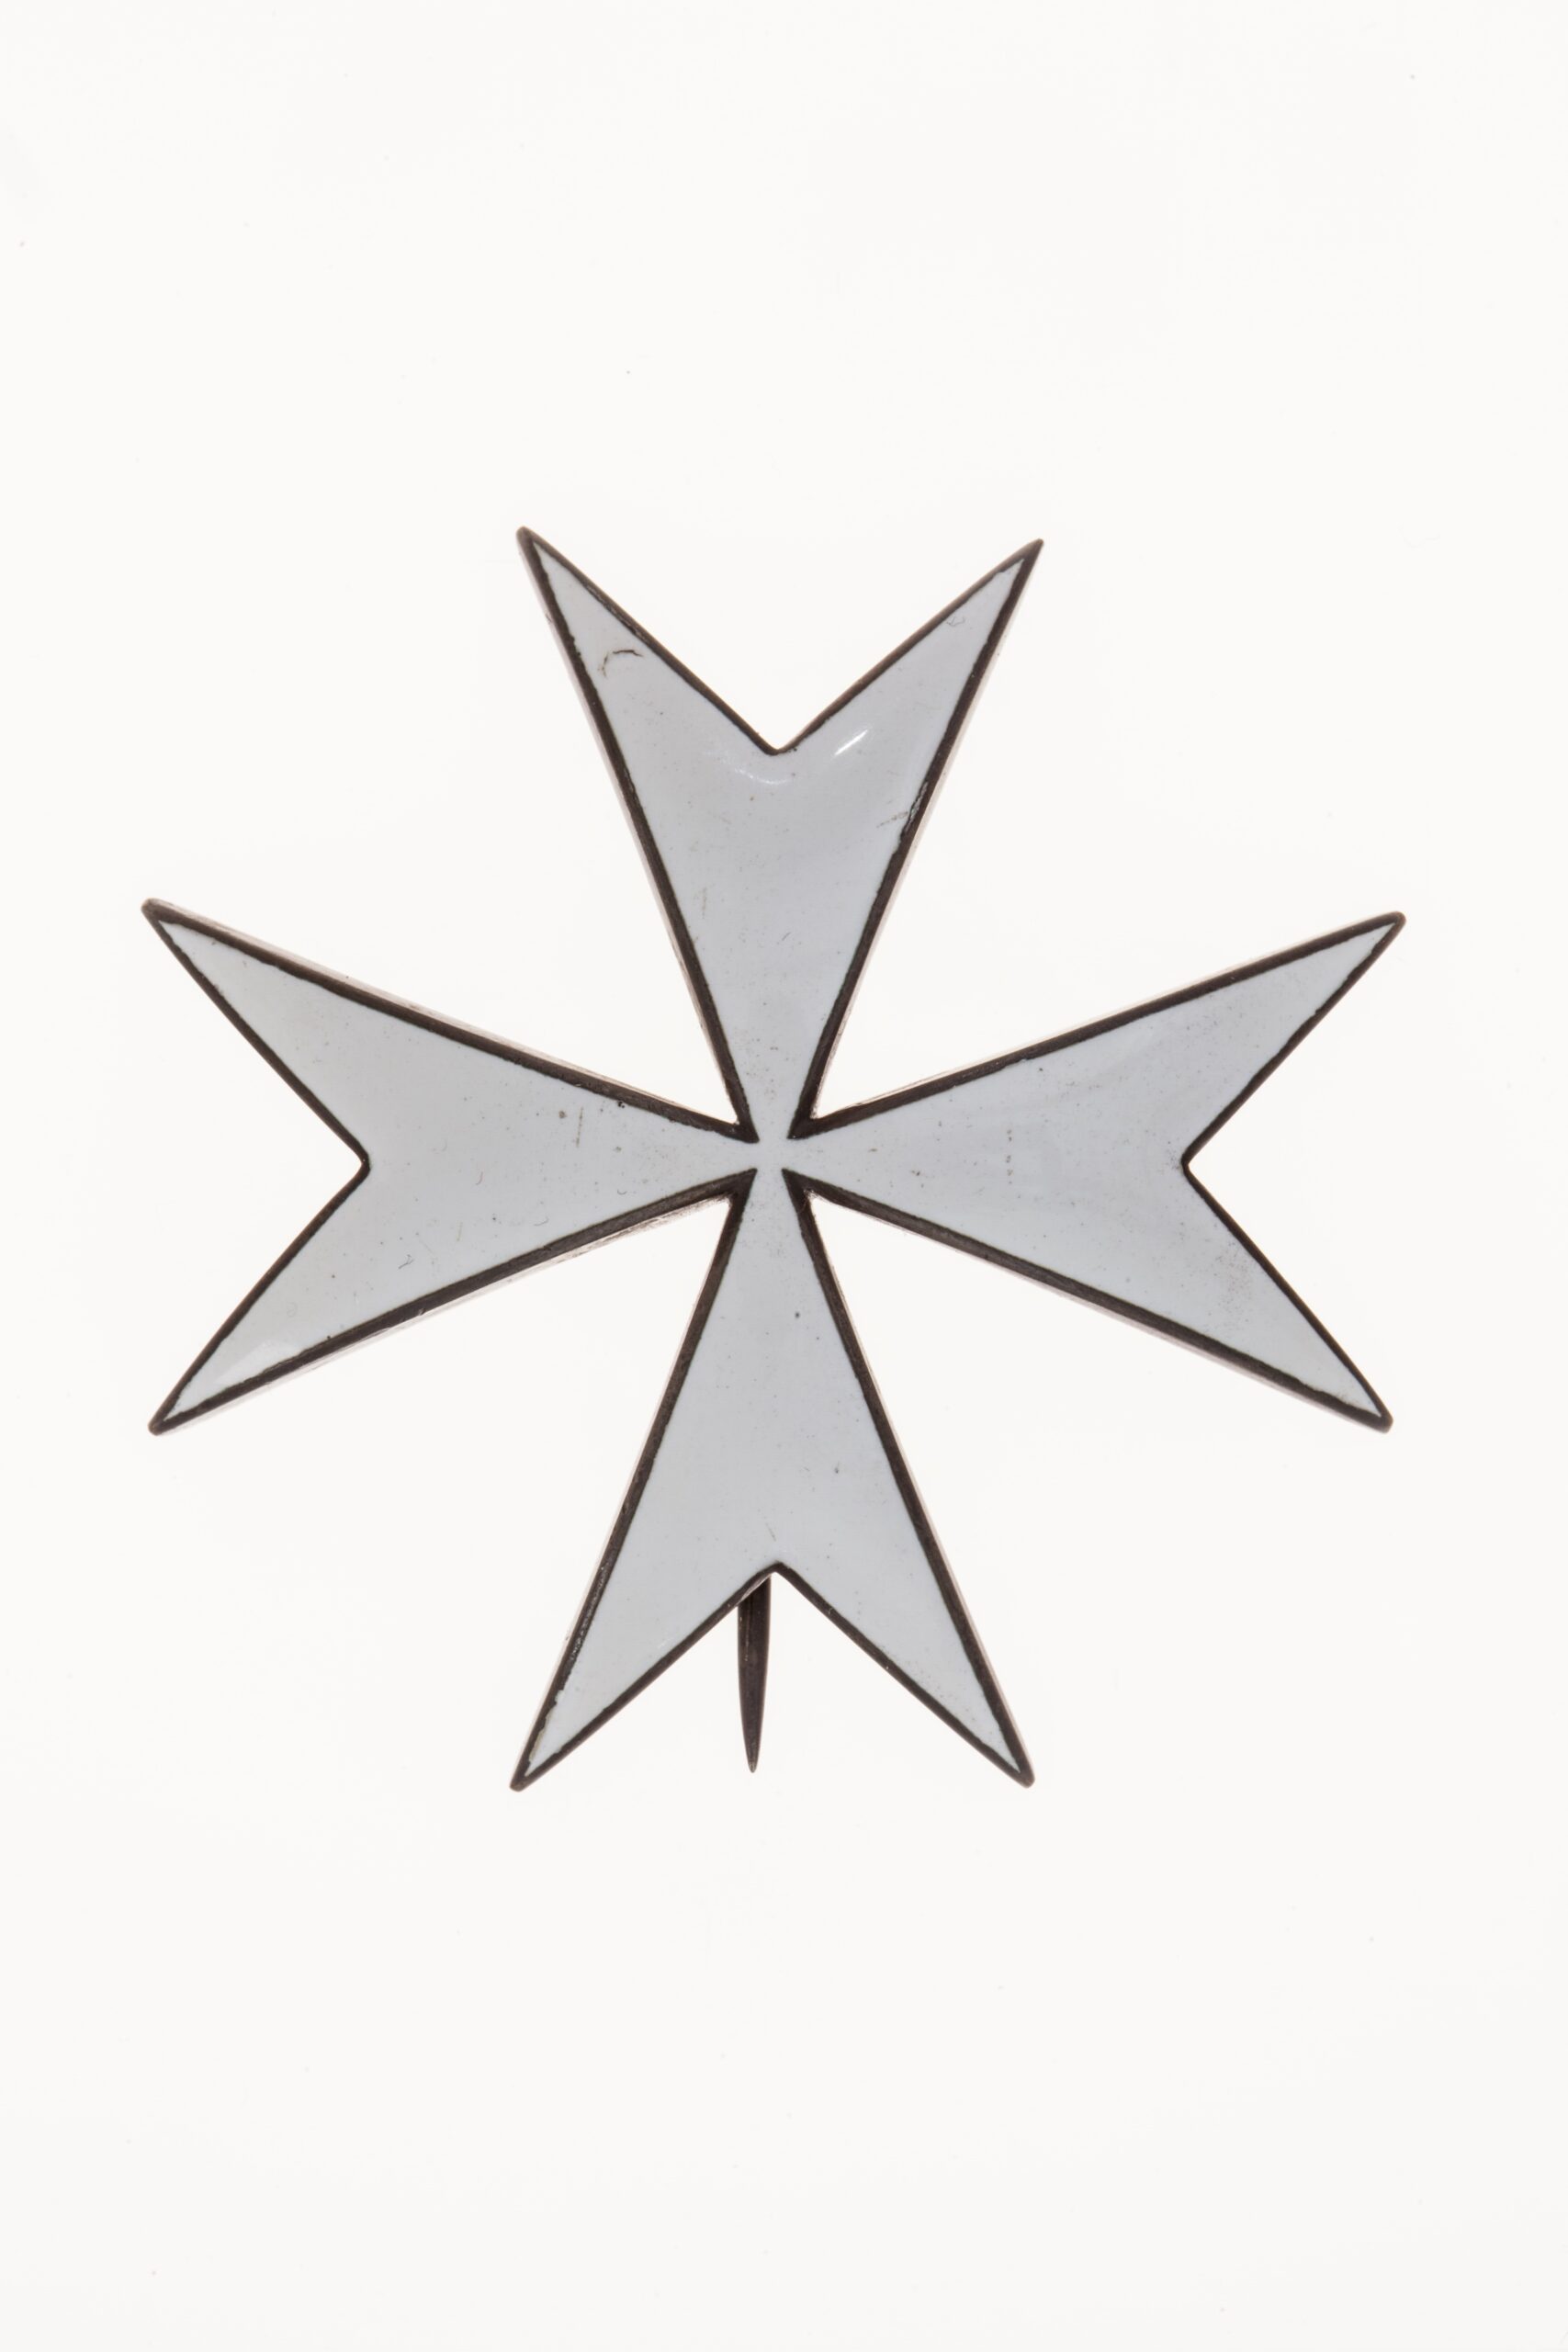 Звезда ордена Святого Иоанна Иерусалимского